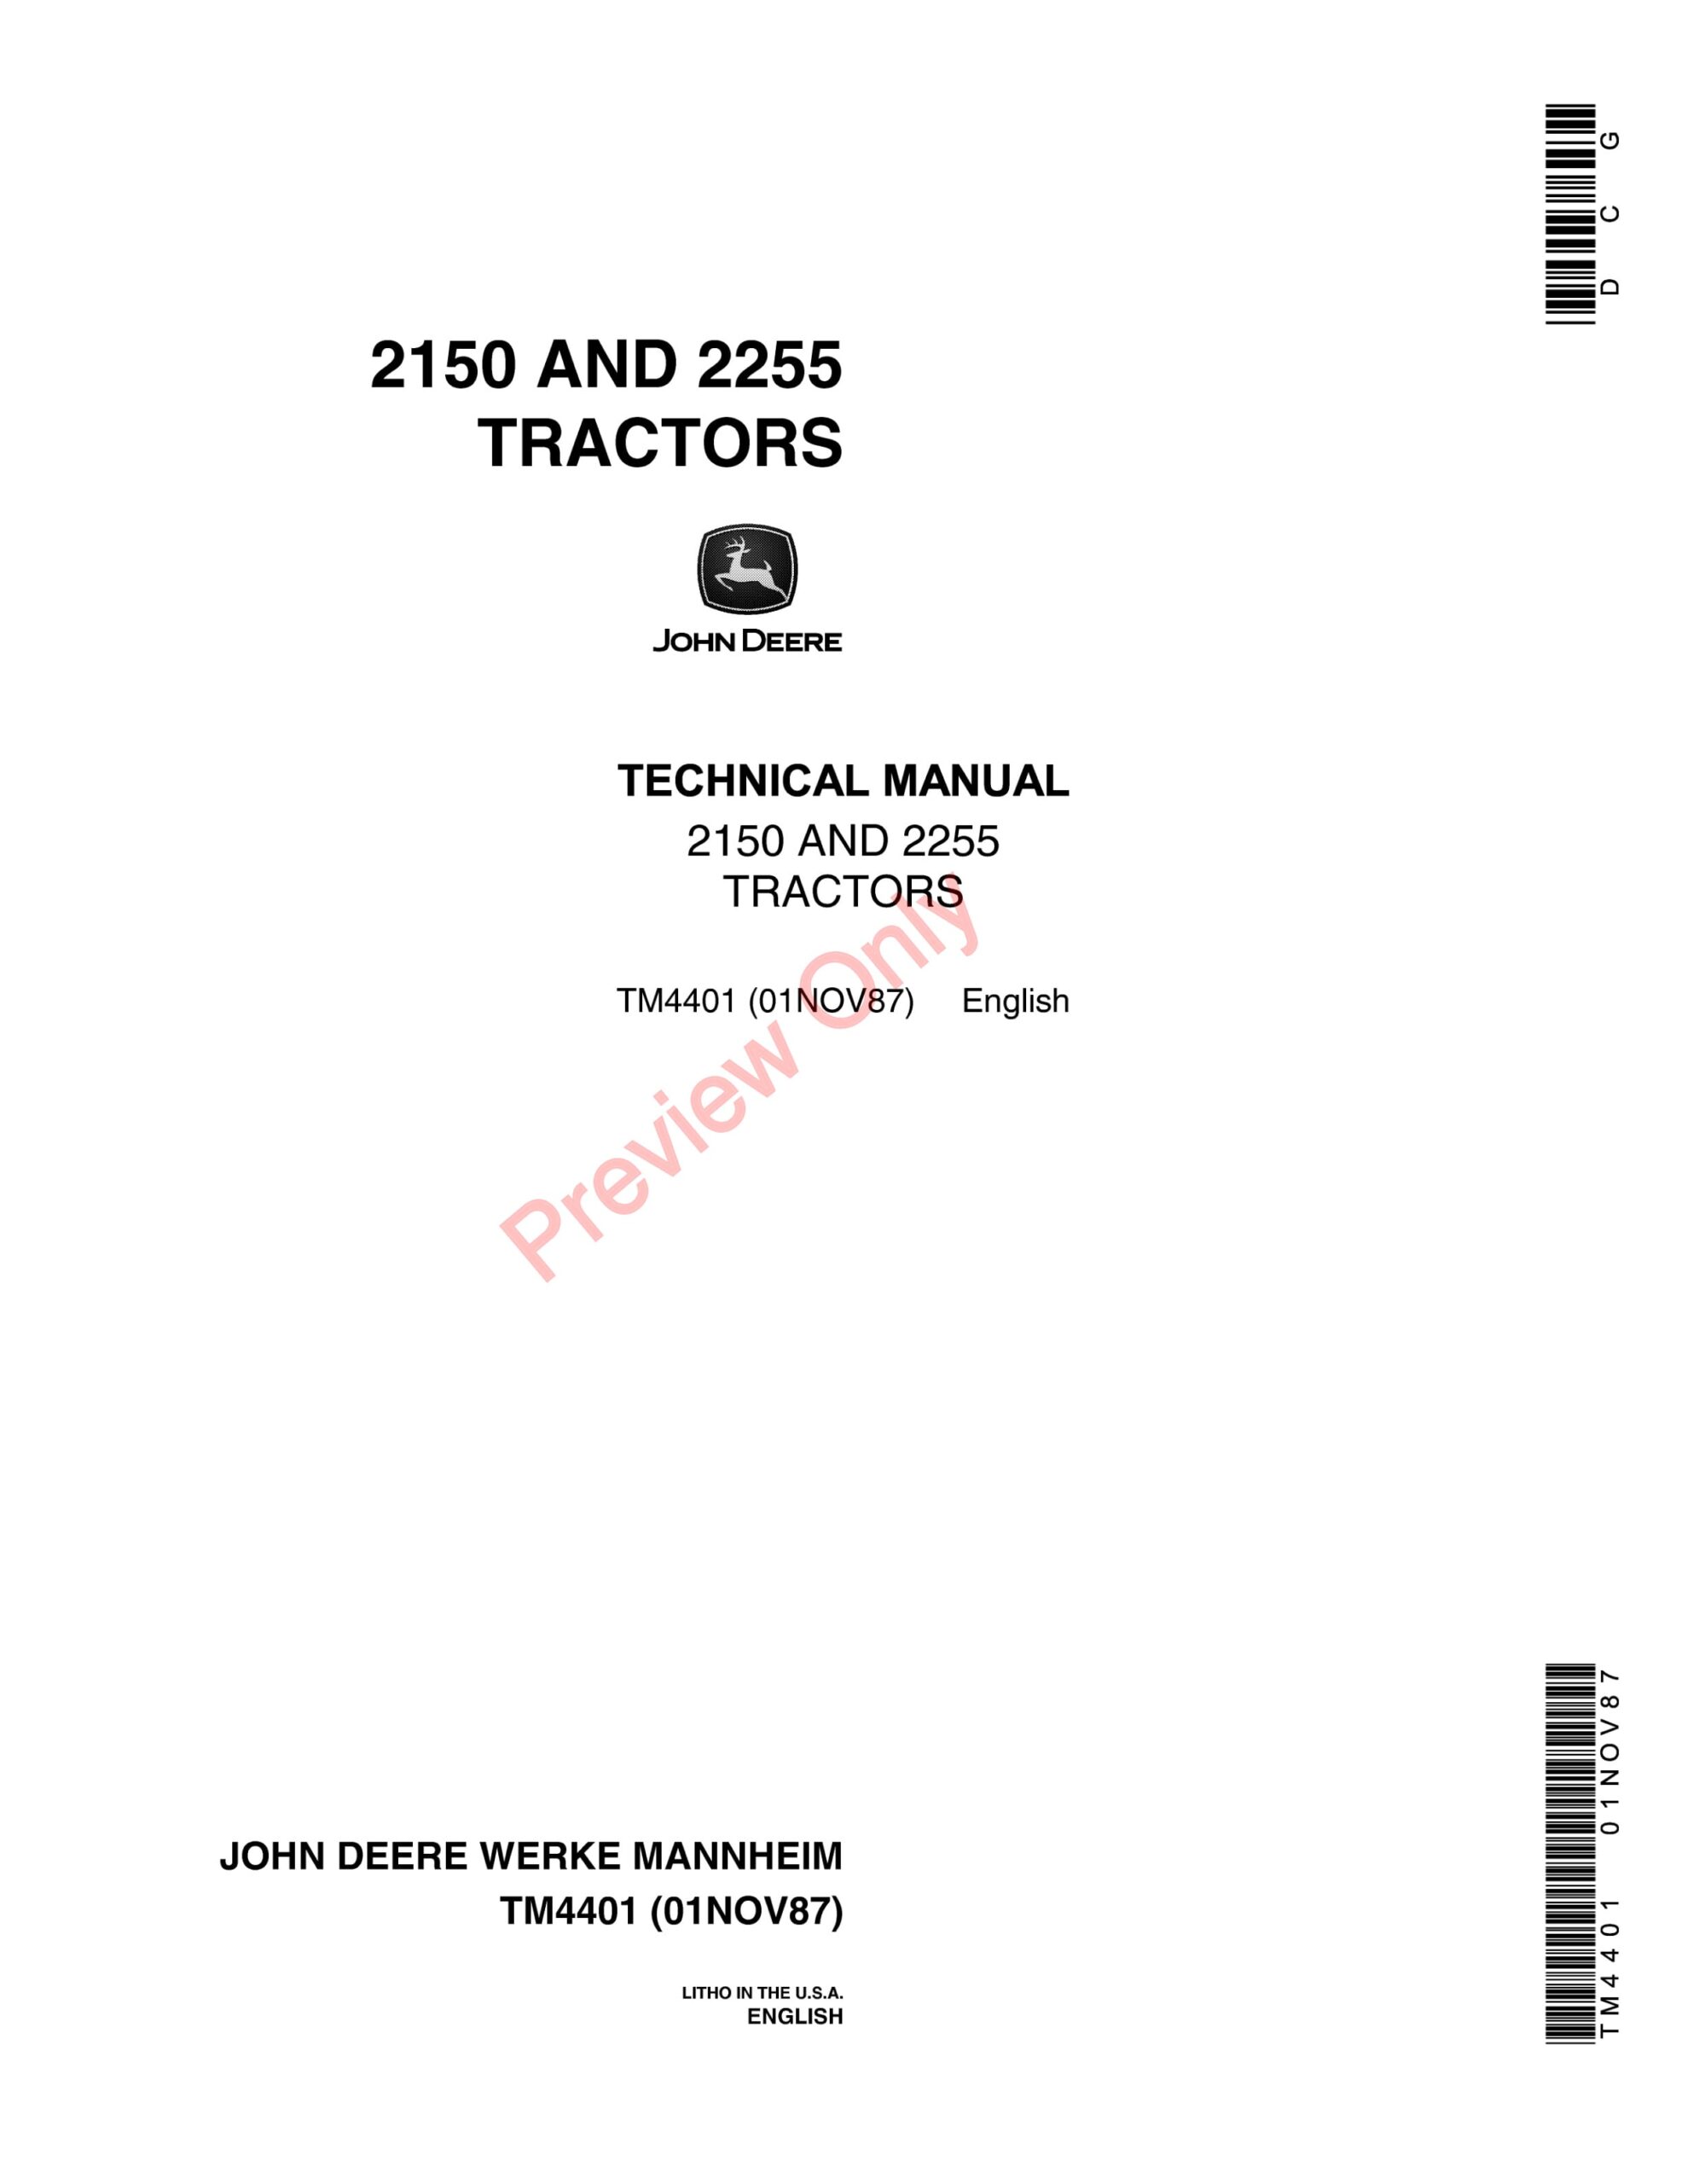 John Deere 2150 and 2250 Tractors Technical Manual TM4401 01NOV87-1